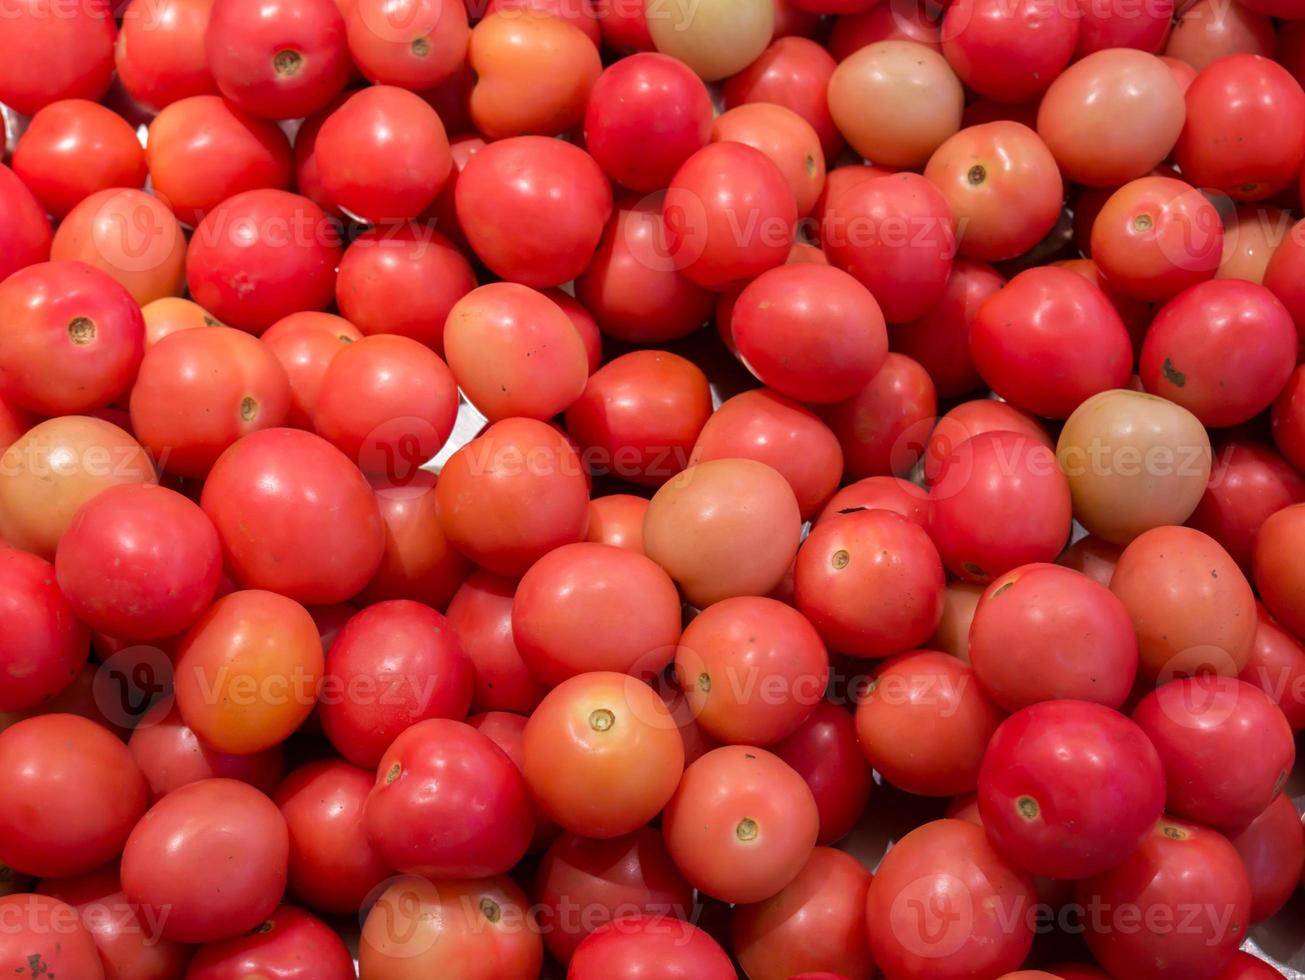 bosje tomaten foto